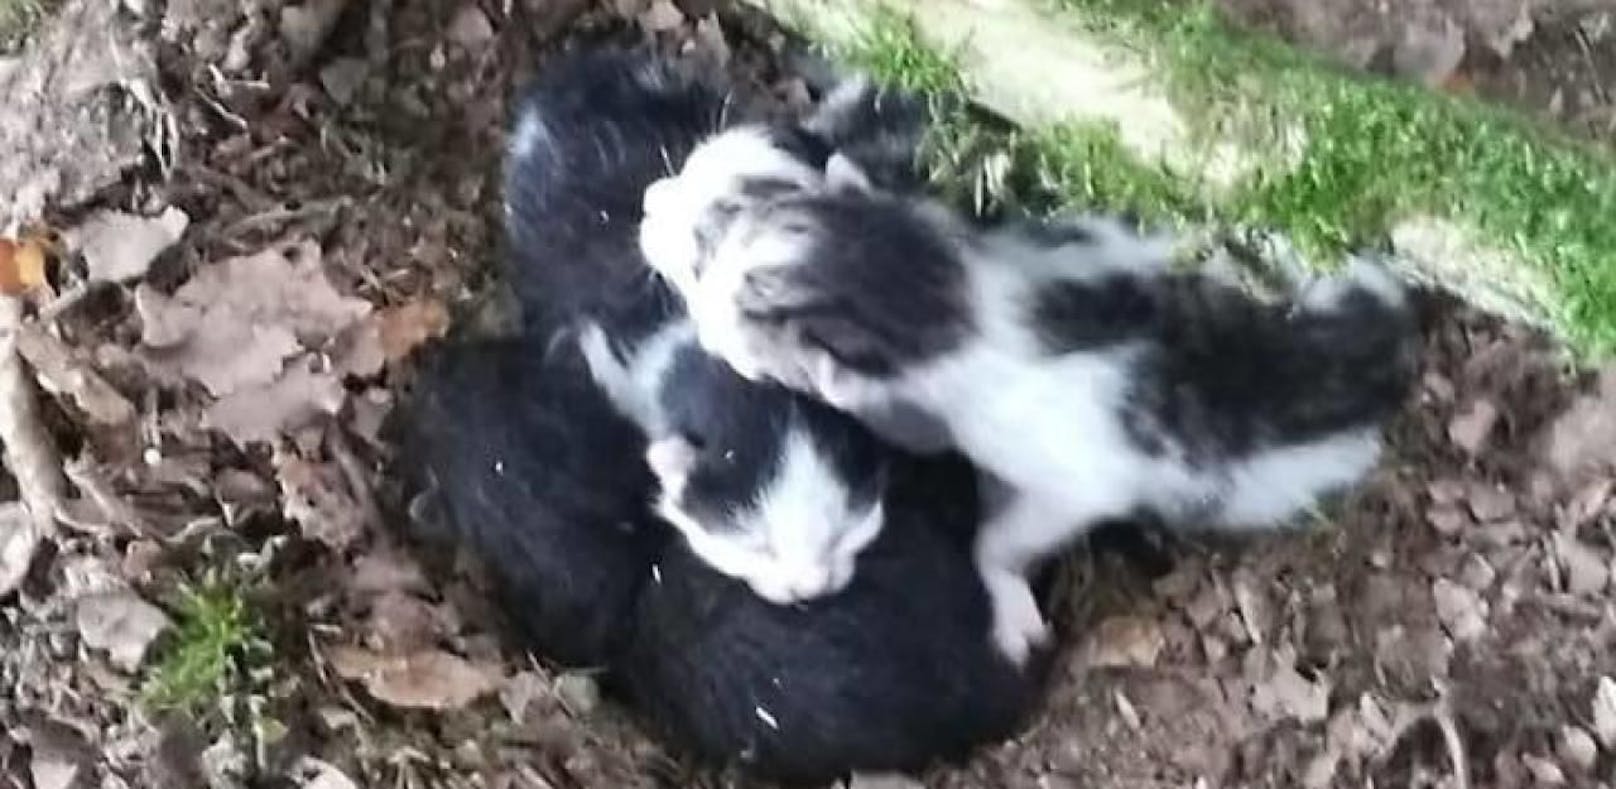 Babykatzen im Wald ausgesetzt - Täter gesucht